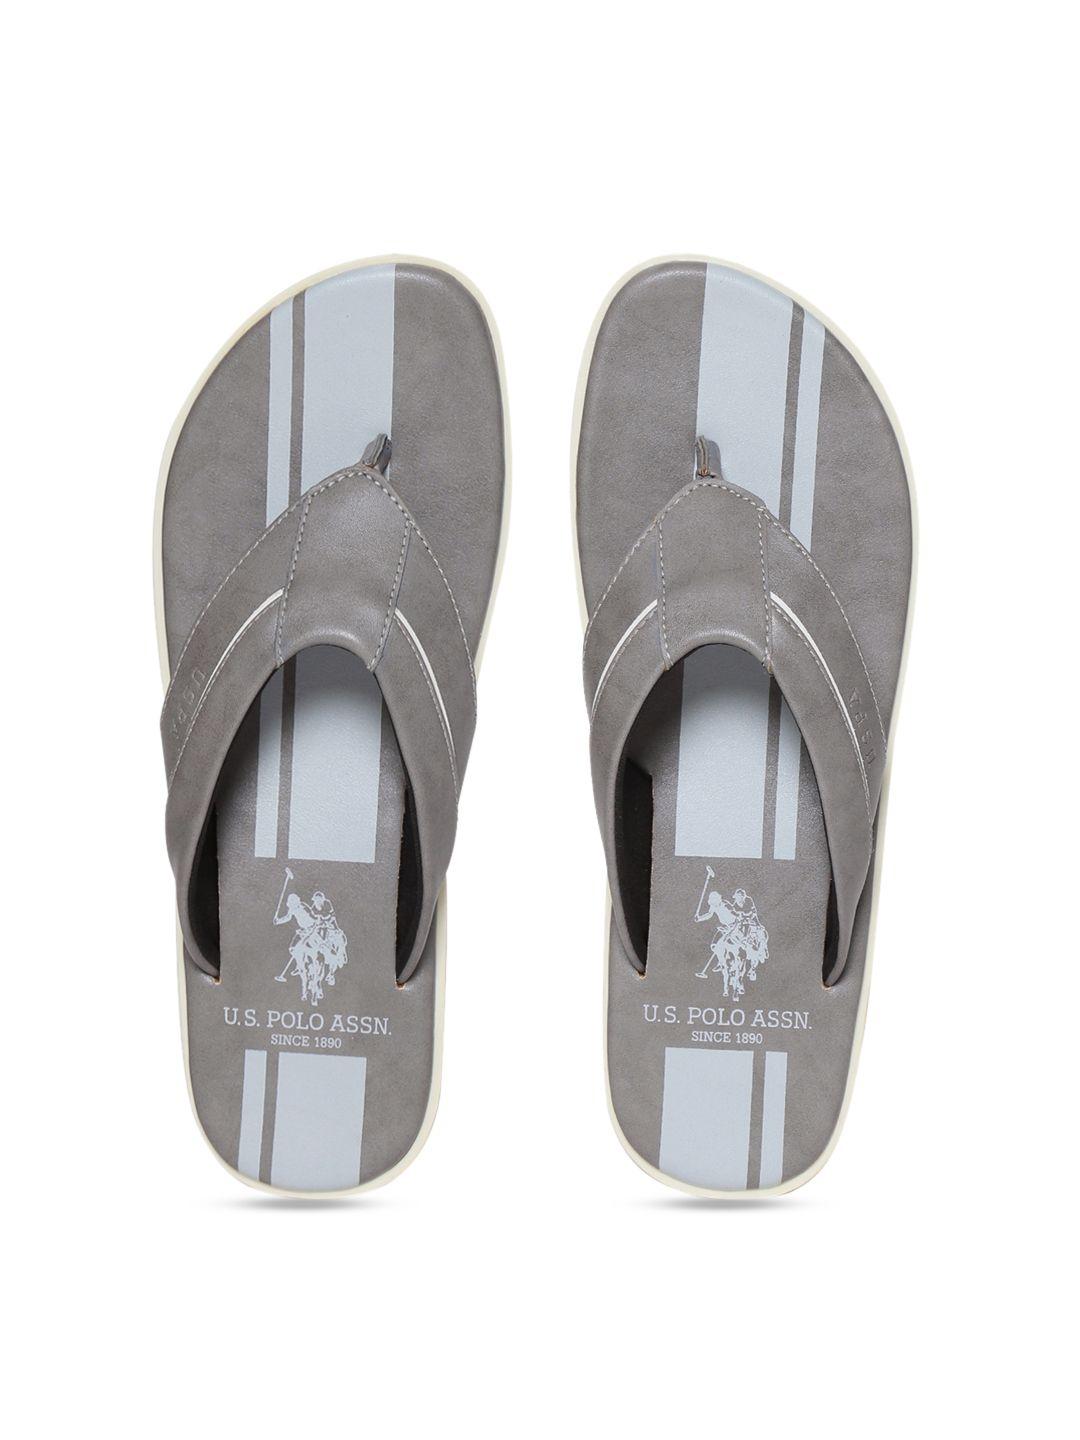 u.s. polo assn. men grey comfort sandals